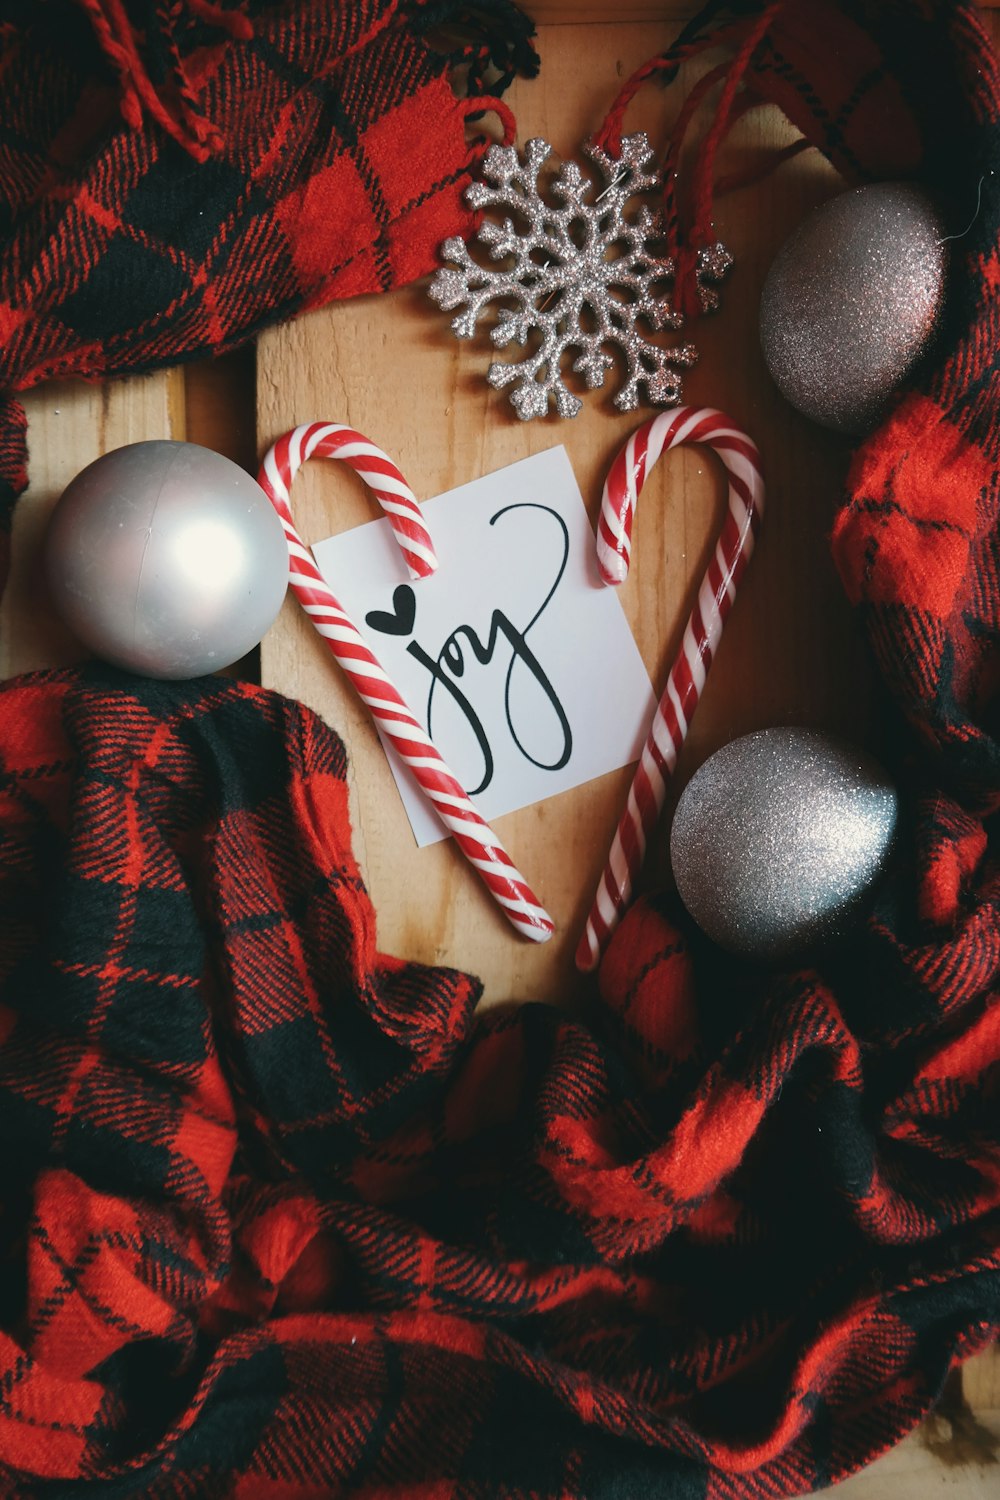 Una nota blanca que dice "Alegría", rodeada de bastones de caramelo, adornos navideños y tela escocesa roja.